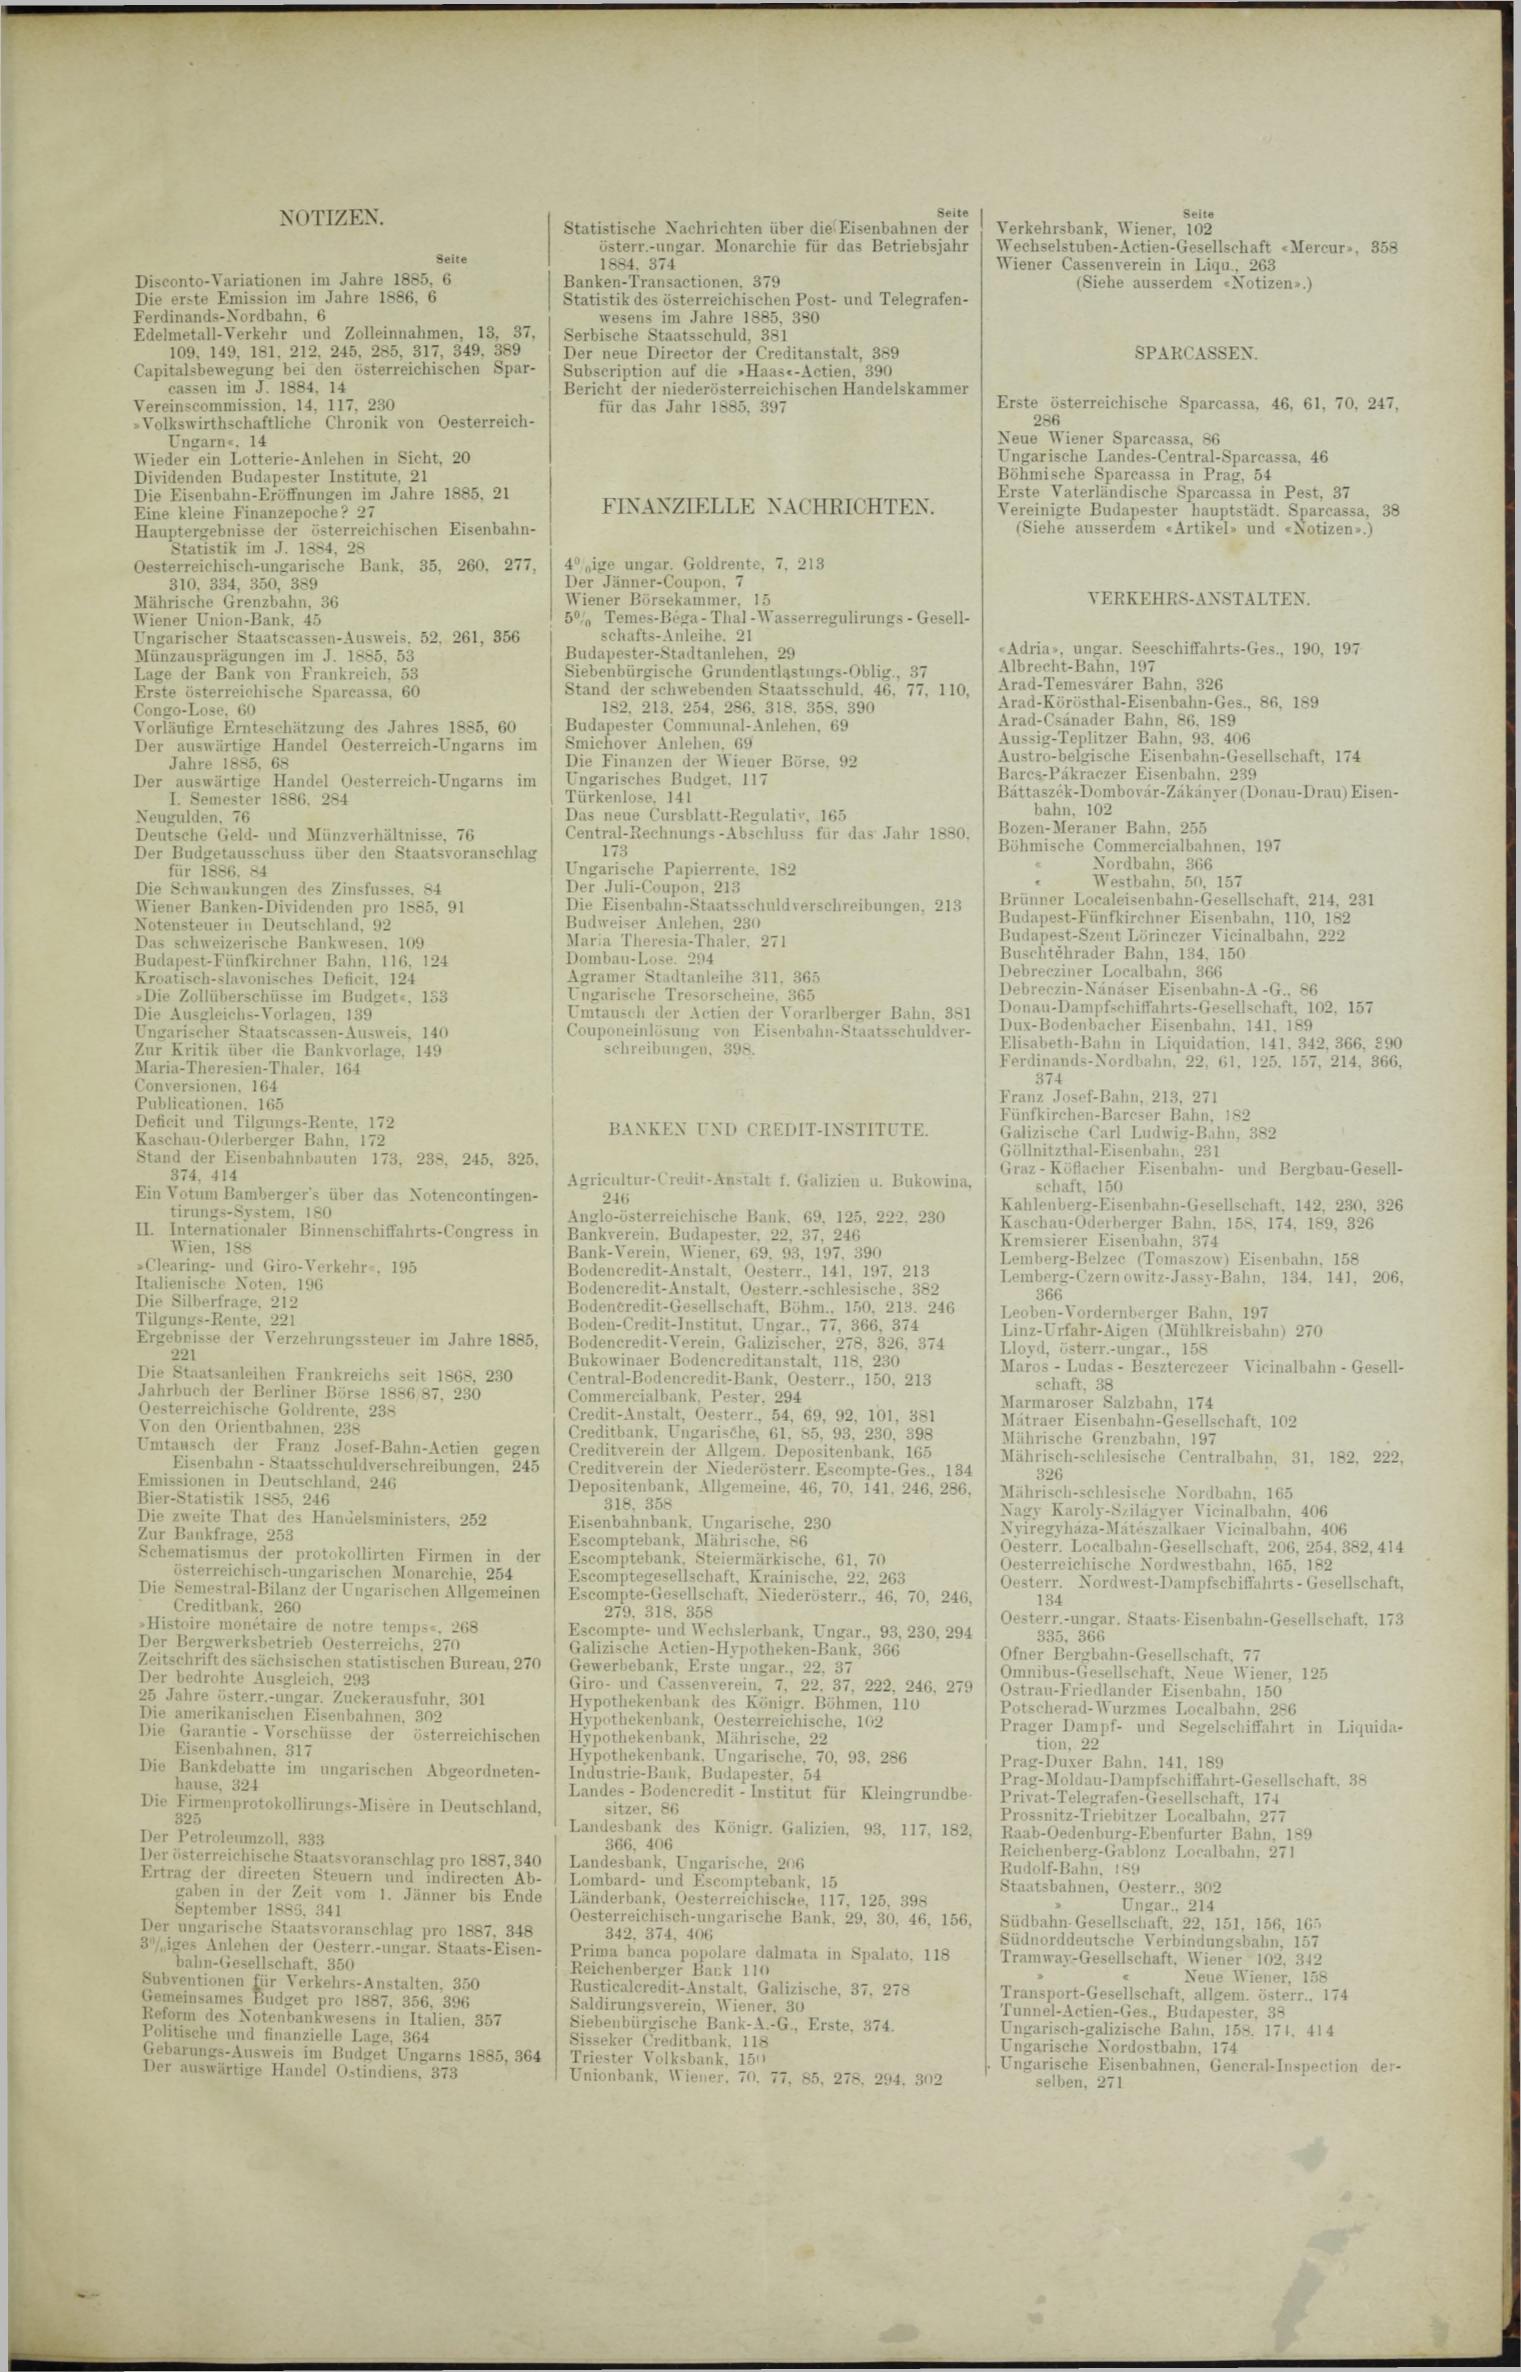 Der Tresor 28.01.1886 - Seite 11